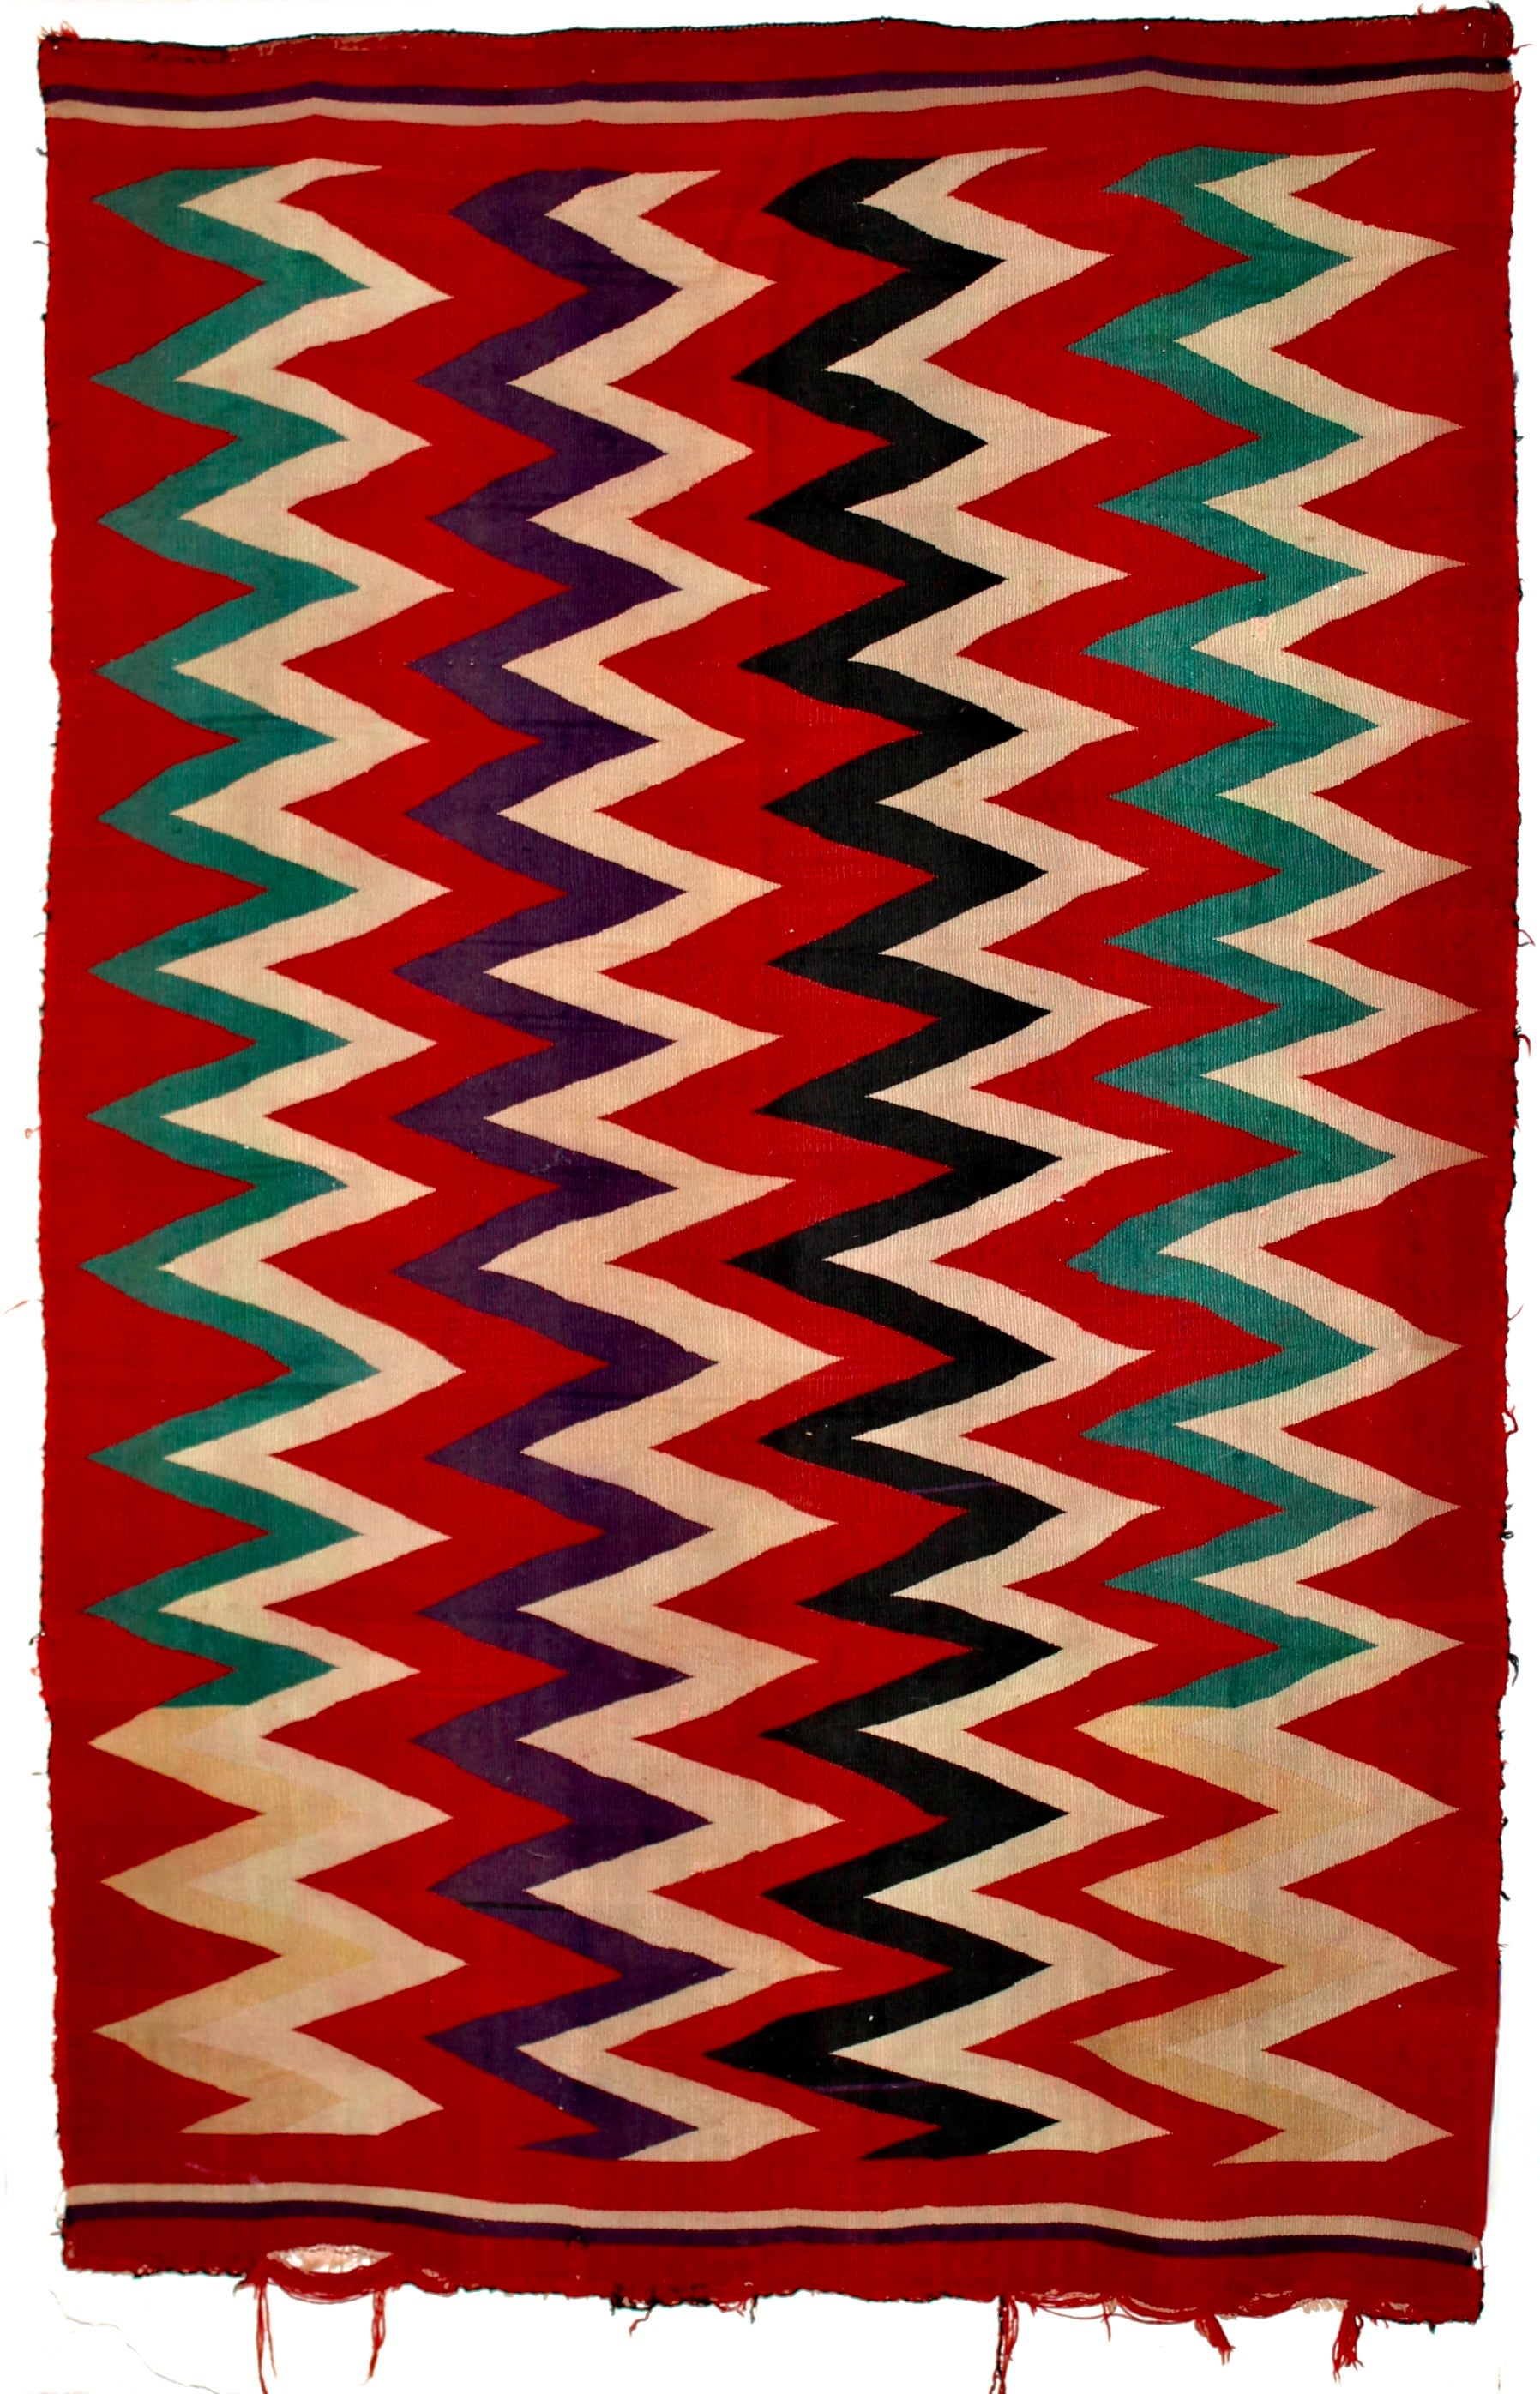 Un Whiting (fin du 19e siècle) composé de lignes étroites verticales en zig-zag de couleur verte, blanche, violette et noire, sur un fond rouge foncé. 72x48